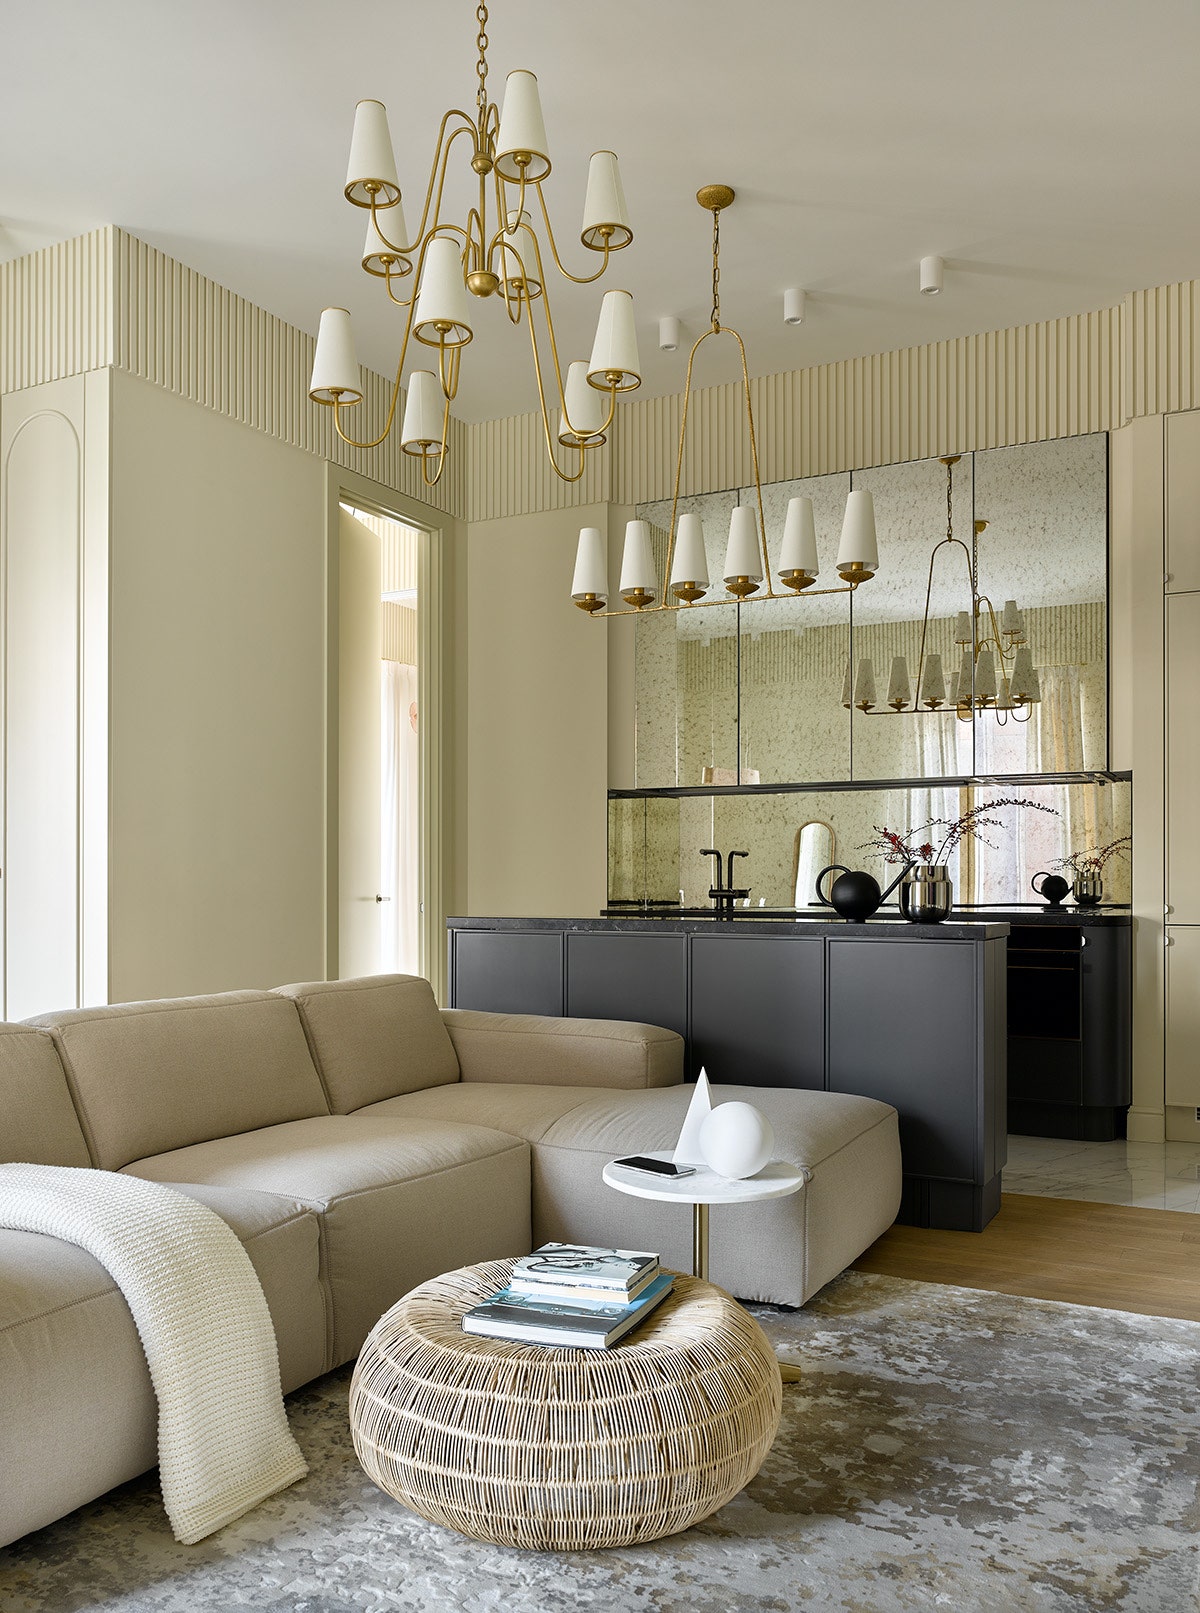 Кухнягостиная. Диван Theca придиванный столик Zara Home потолочный светильник Visual Comfort amp Co. ковер Art de Vivre.